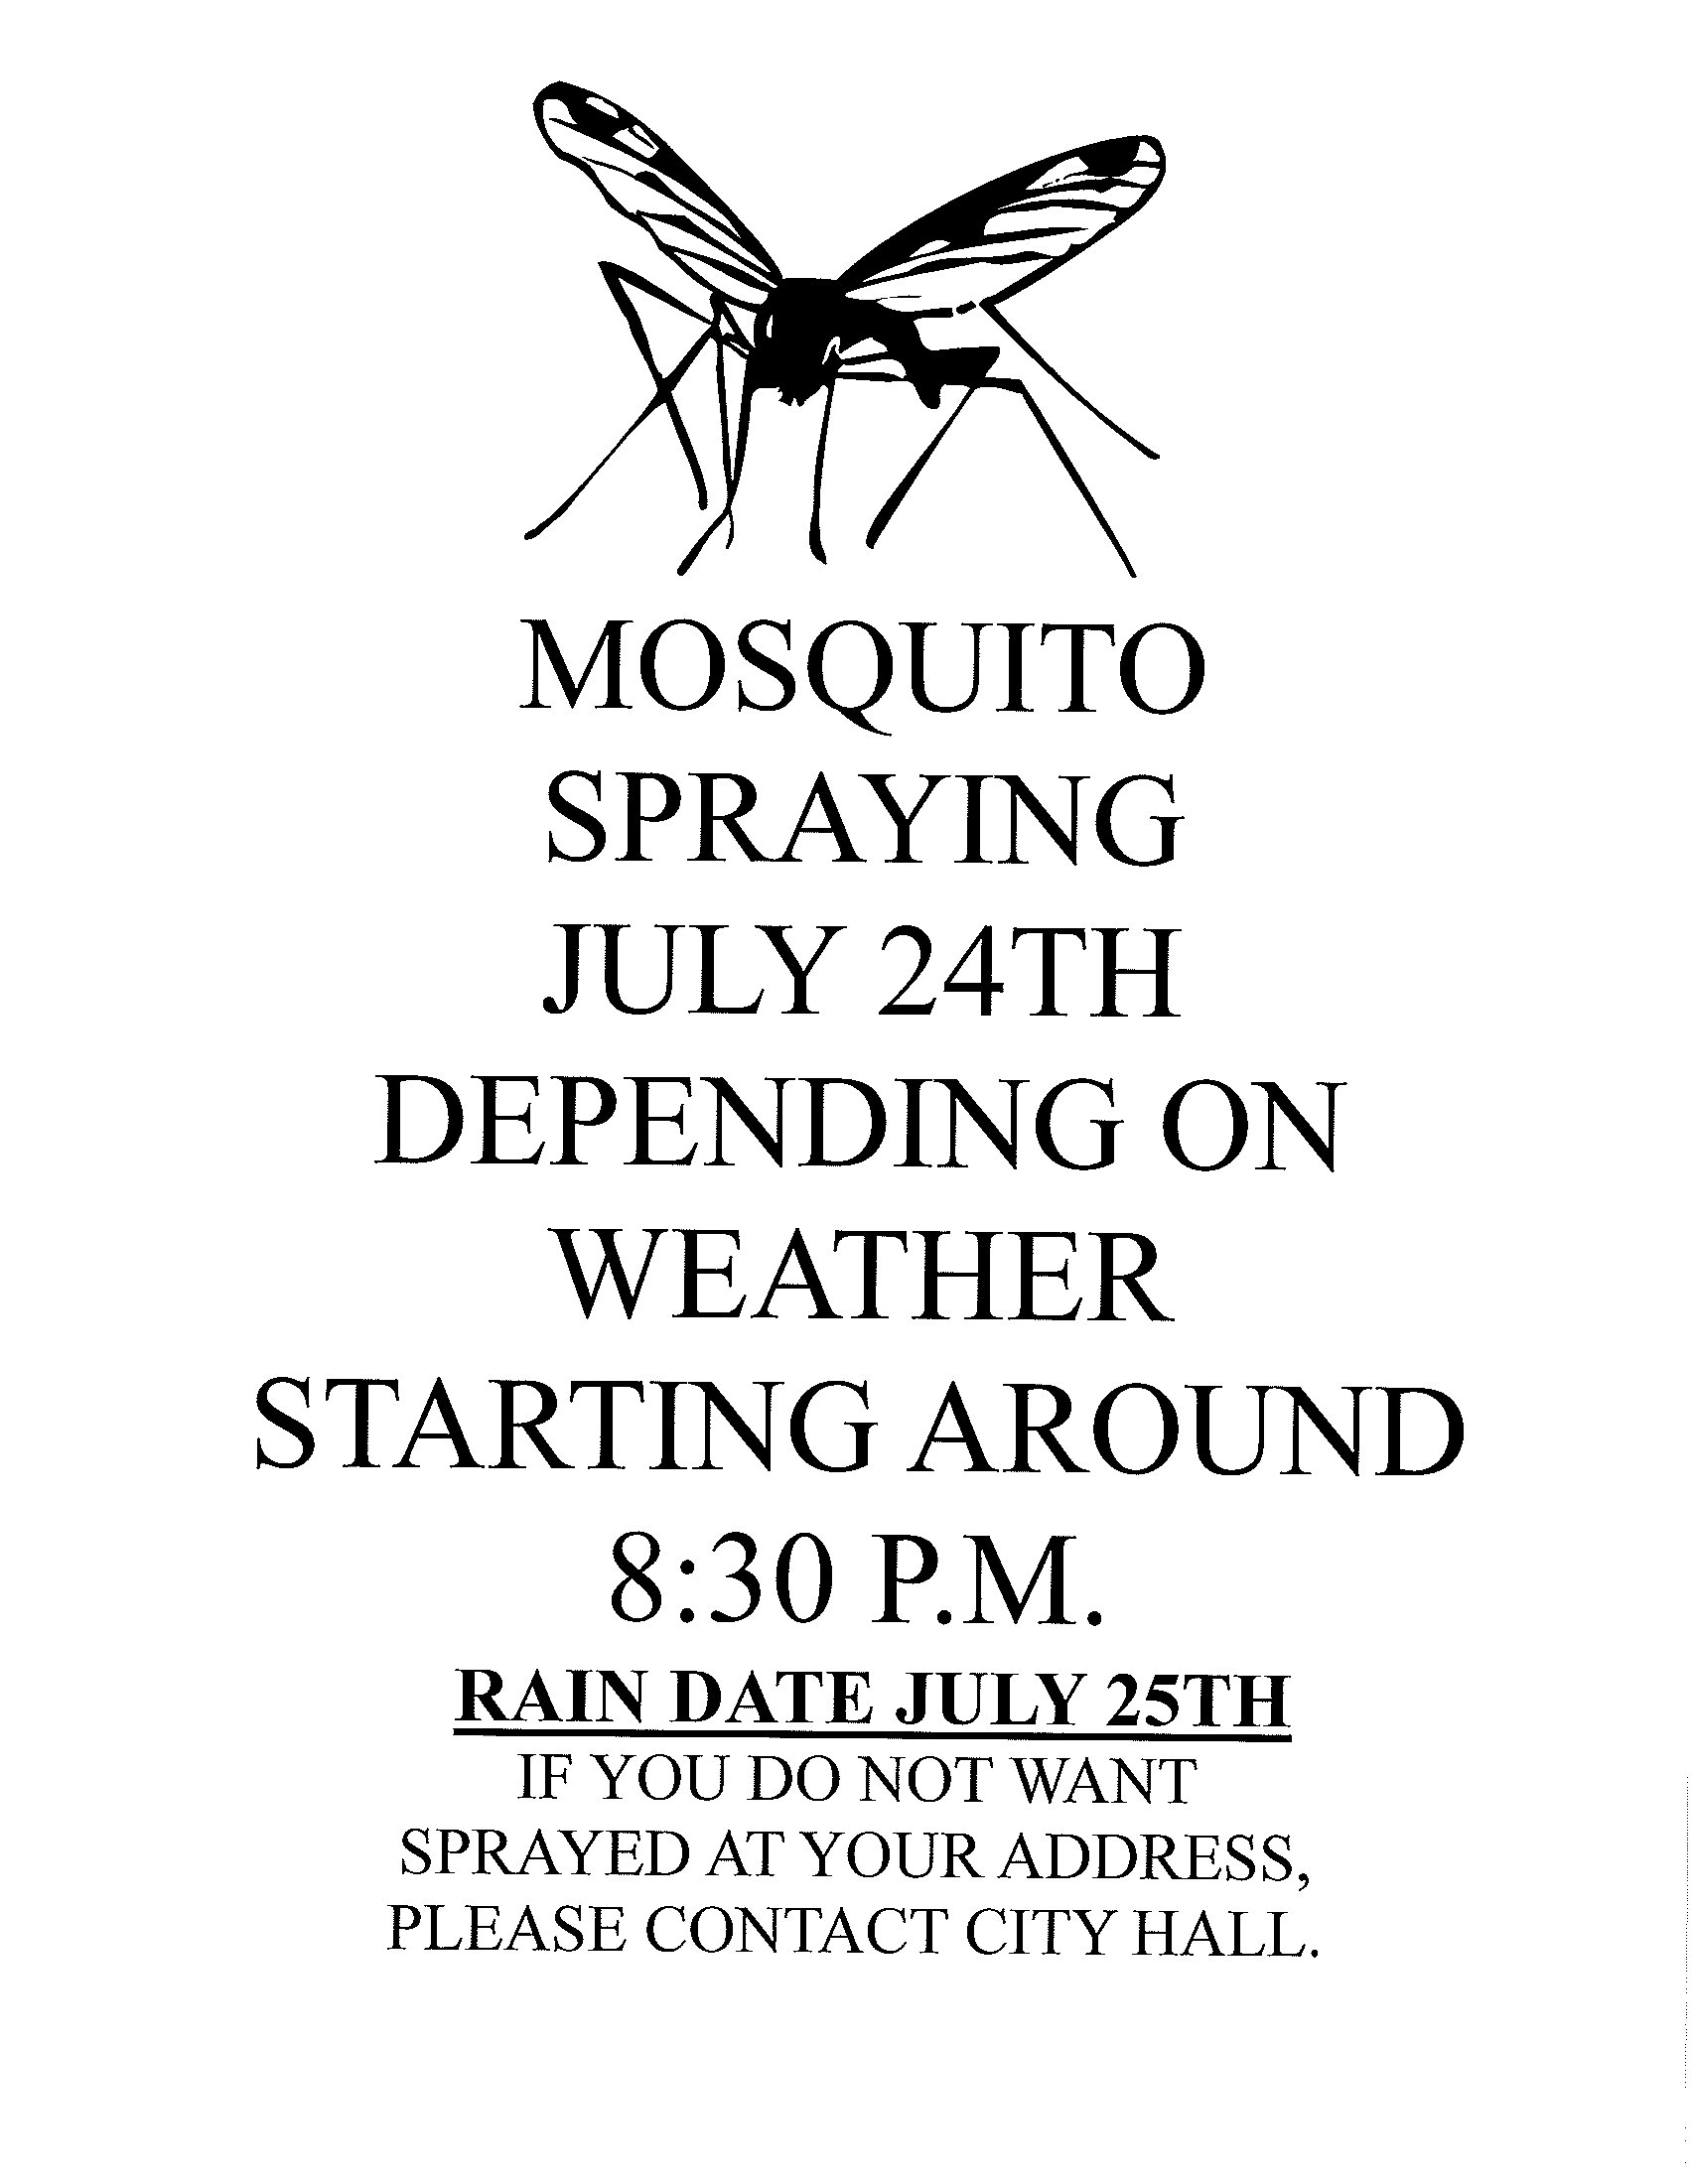 Mosquito spraying